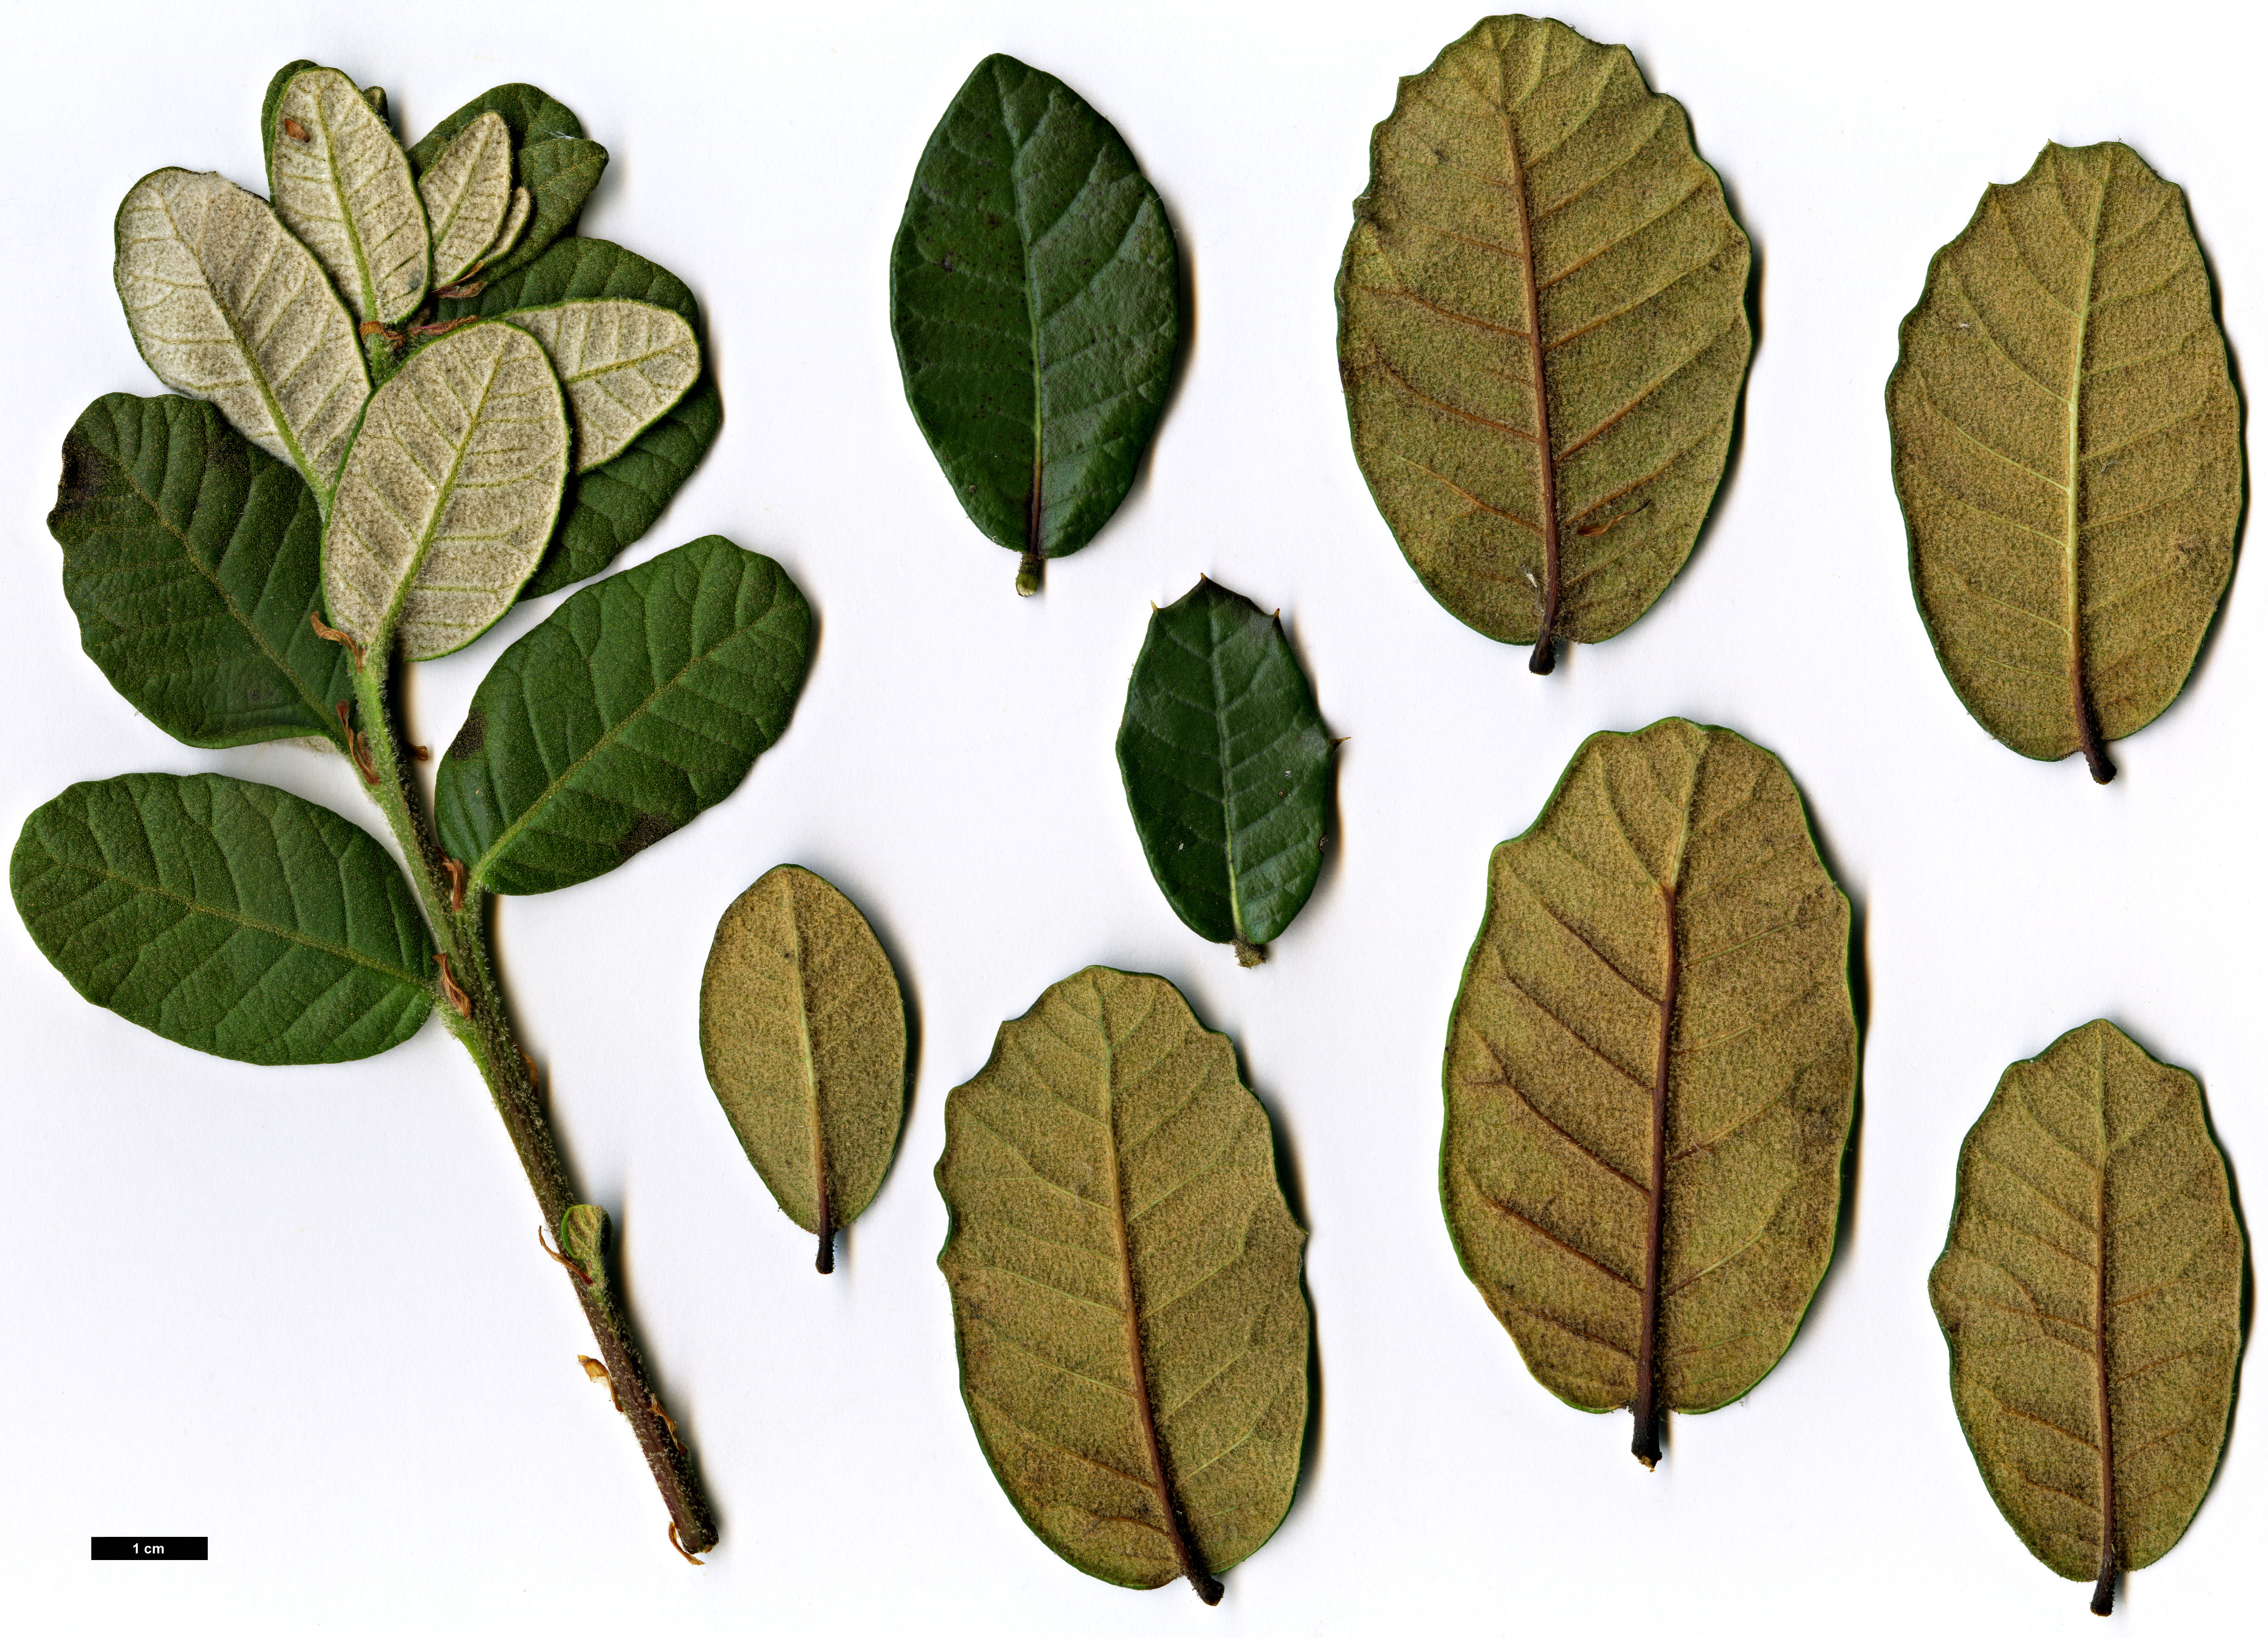 High resolution image: Family: Fagaceae - Genus: Quercus - Taxon: pannosa